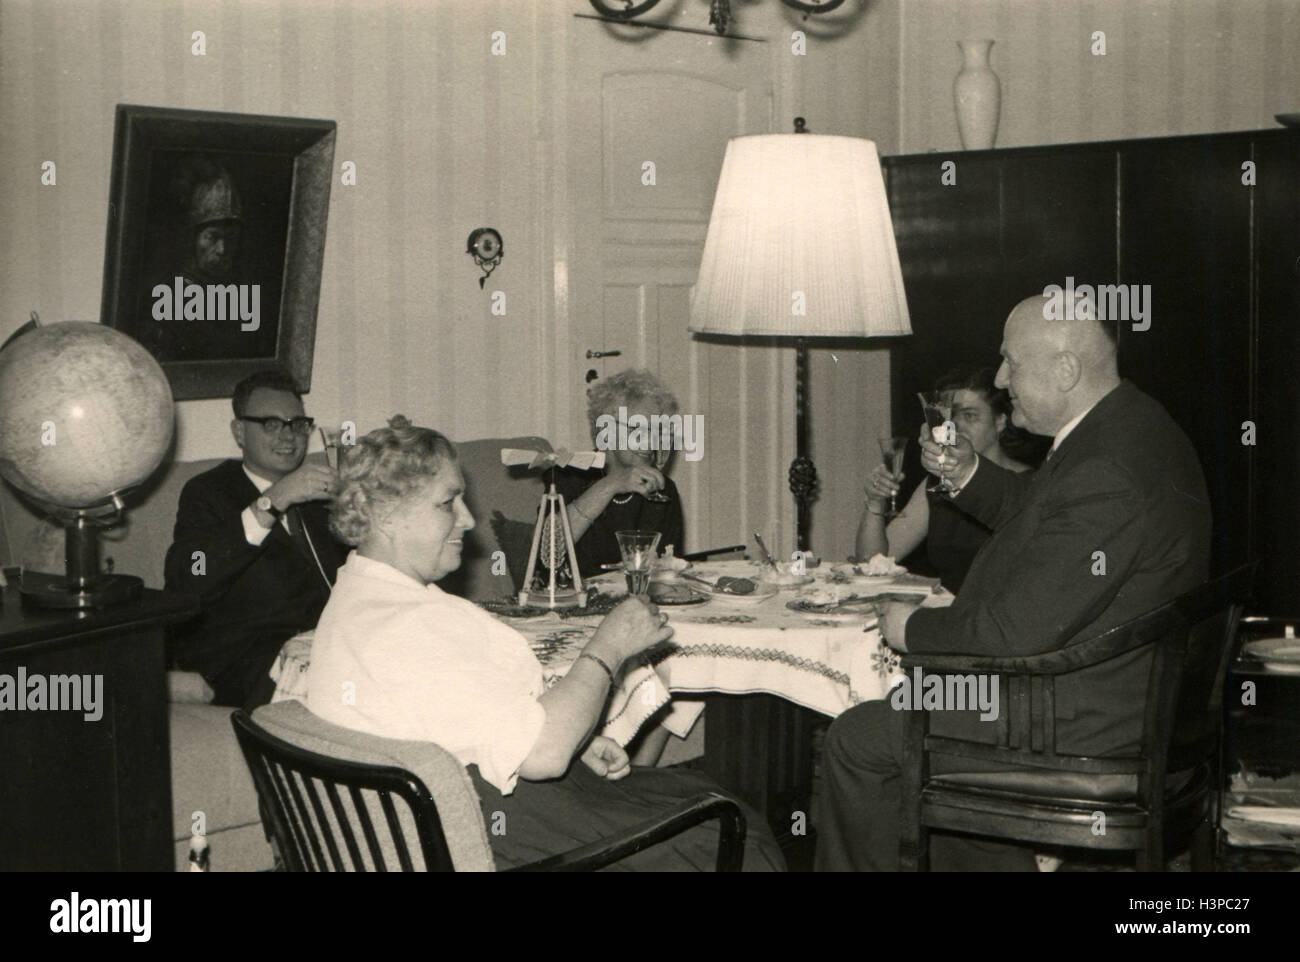 Allemagne - circa 1960 : groupe de trois femmes âgées et deux hommes en costume assis à table de fête dans les mains qu'ils détiennent leurs verres avec de l'alcool Banque D'Images